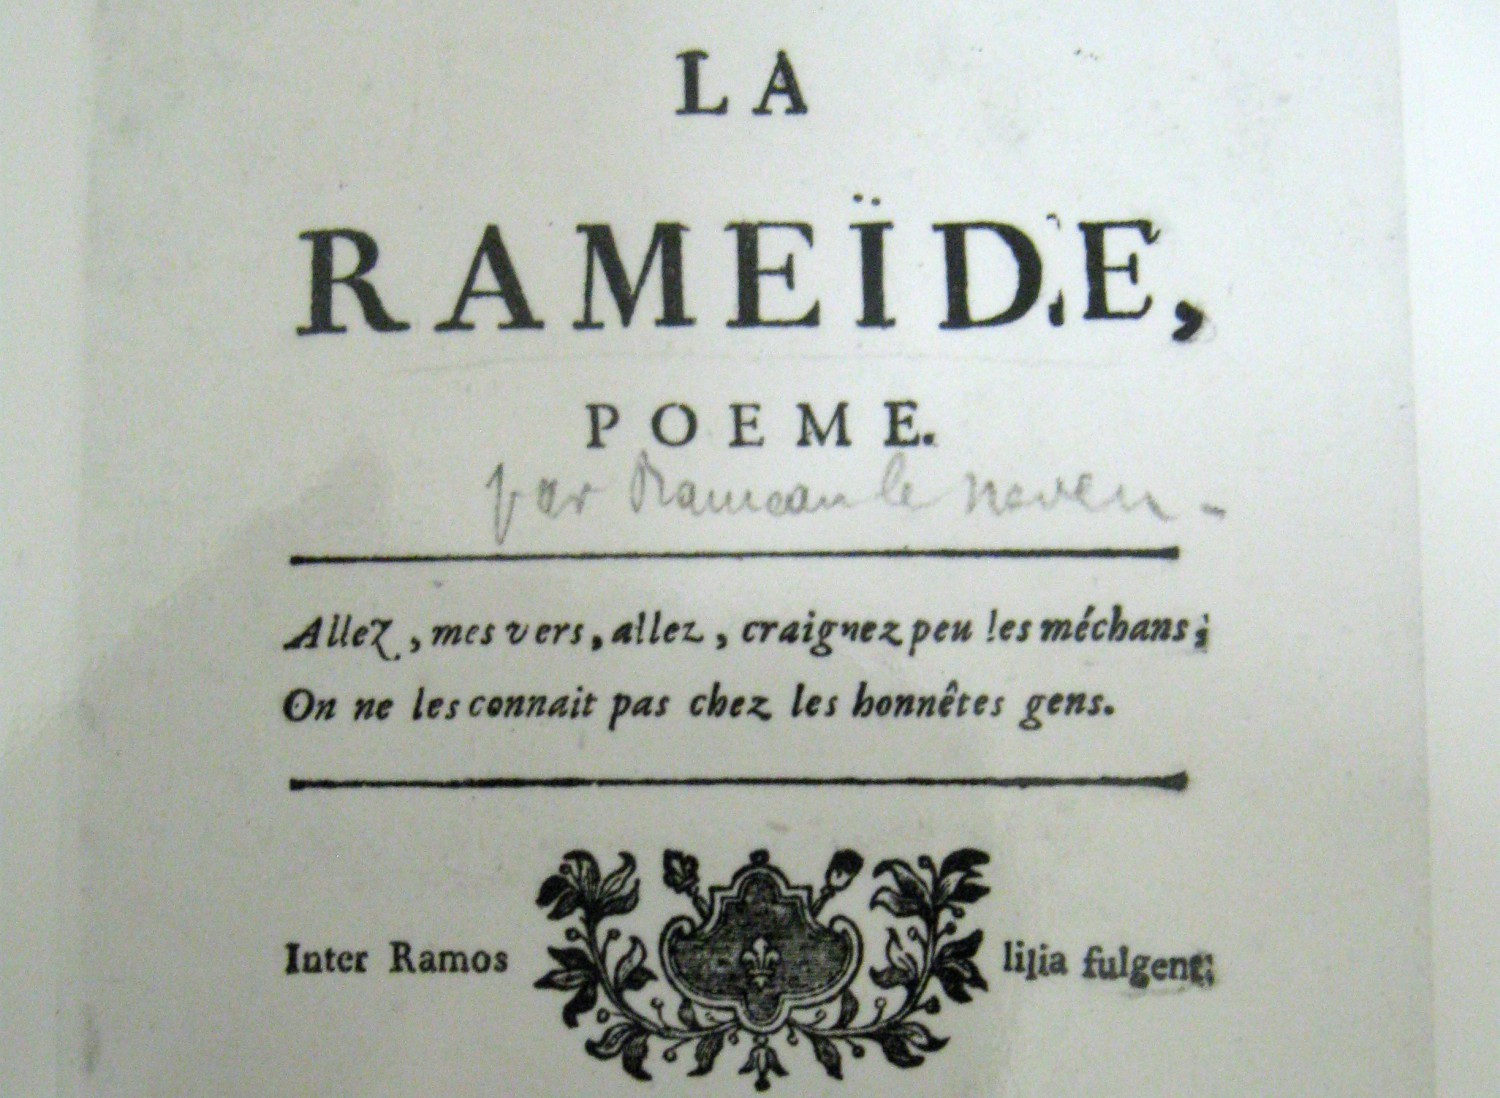 30 janvier 1716 – 30 janvier 2016 : Jean-François Rameau à la fête